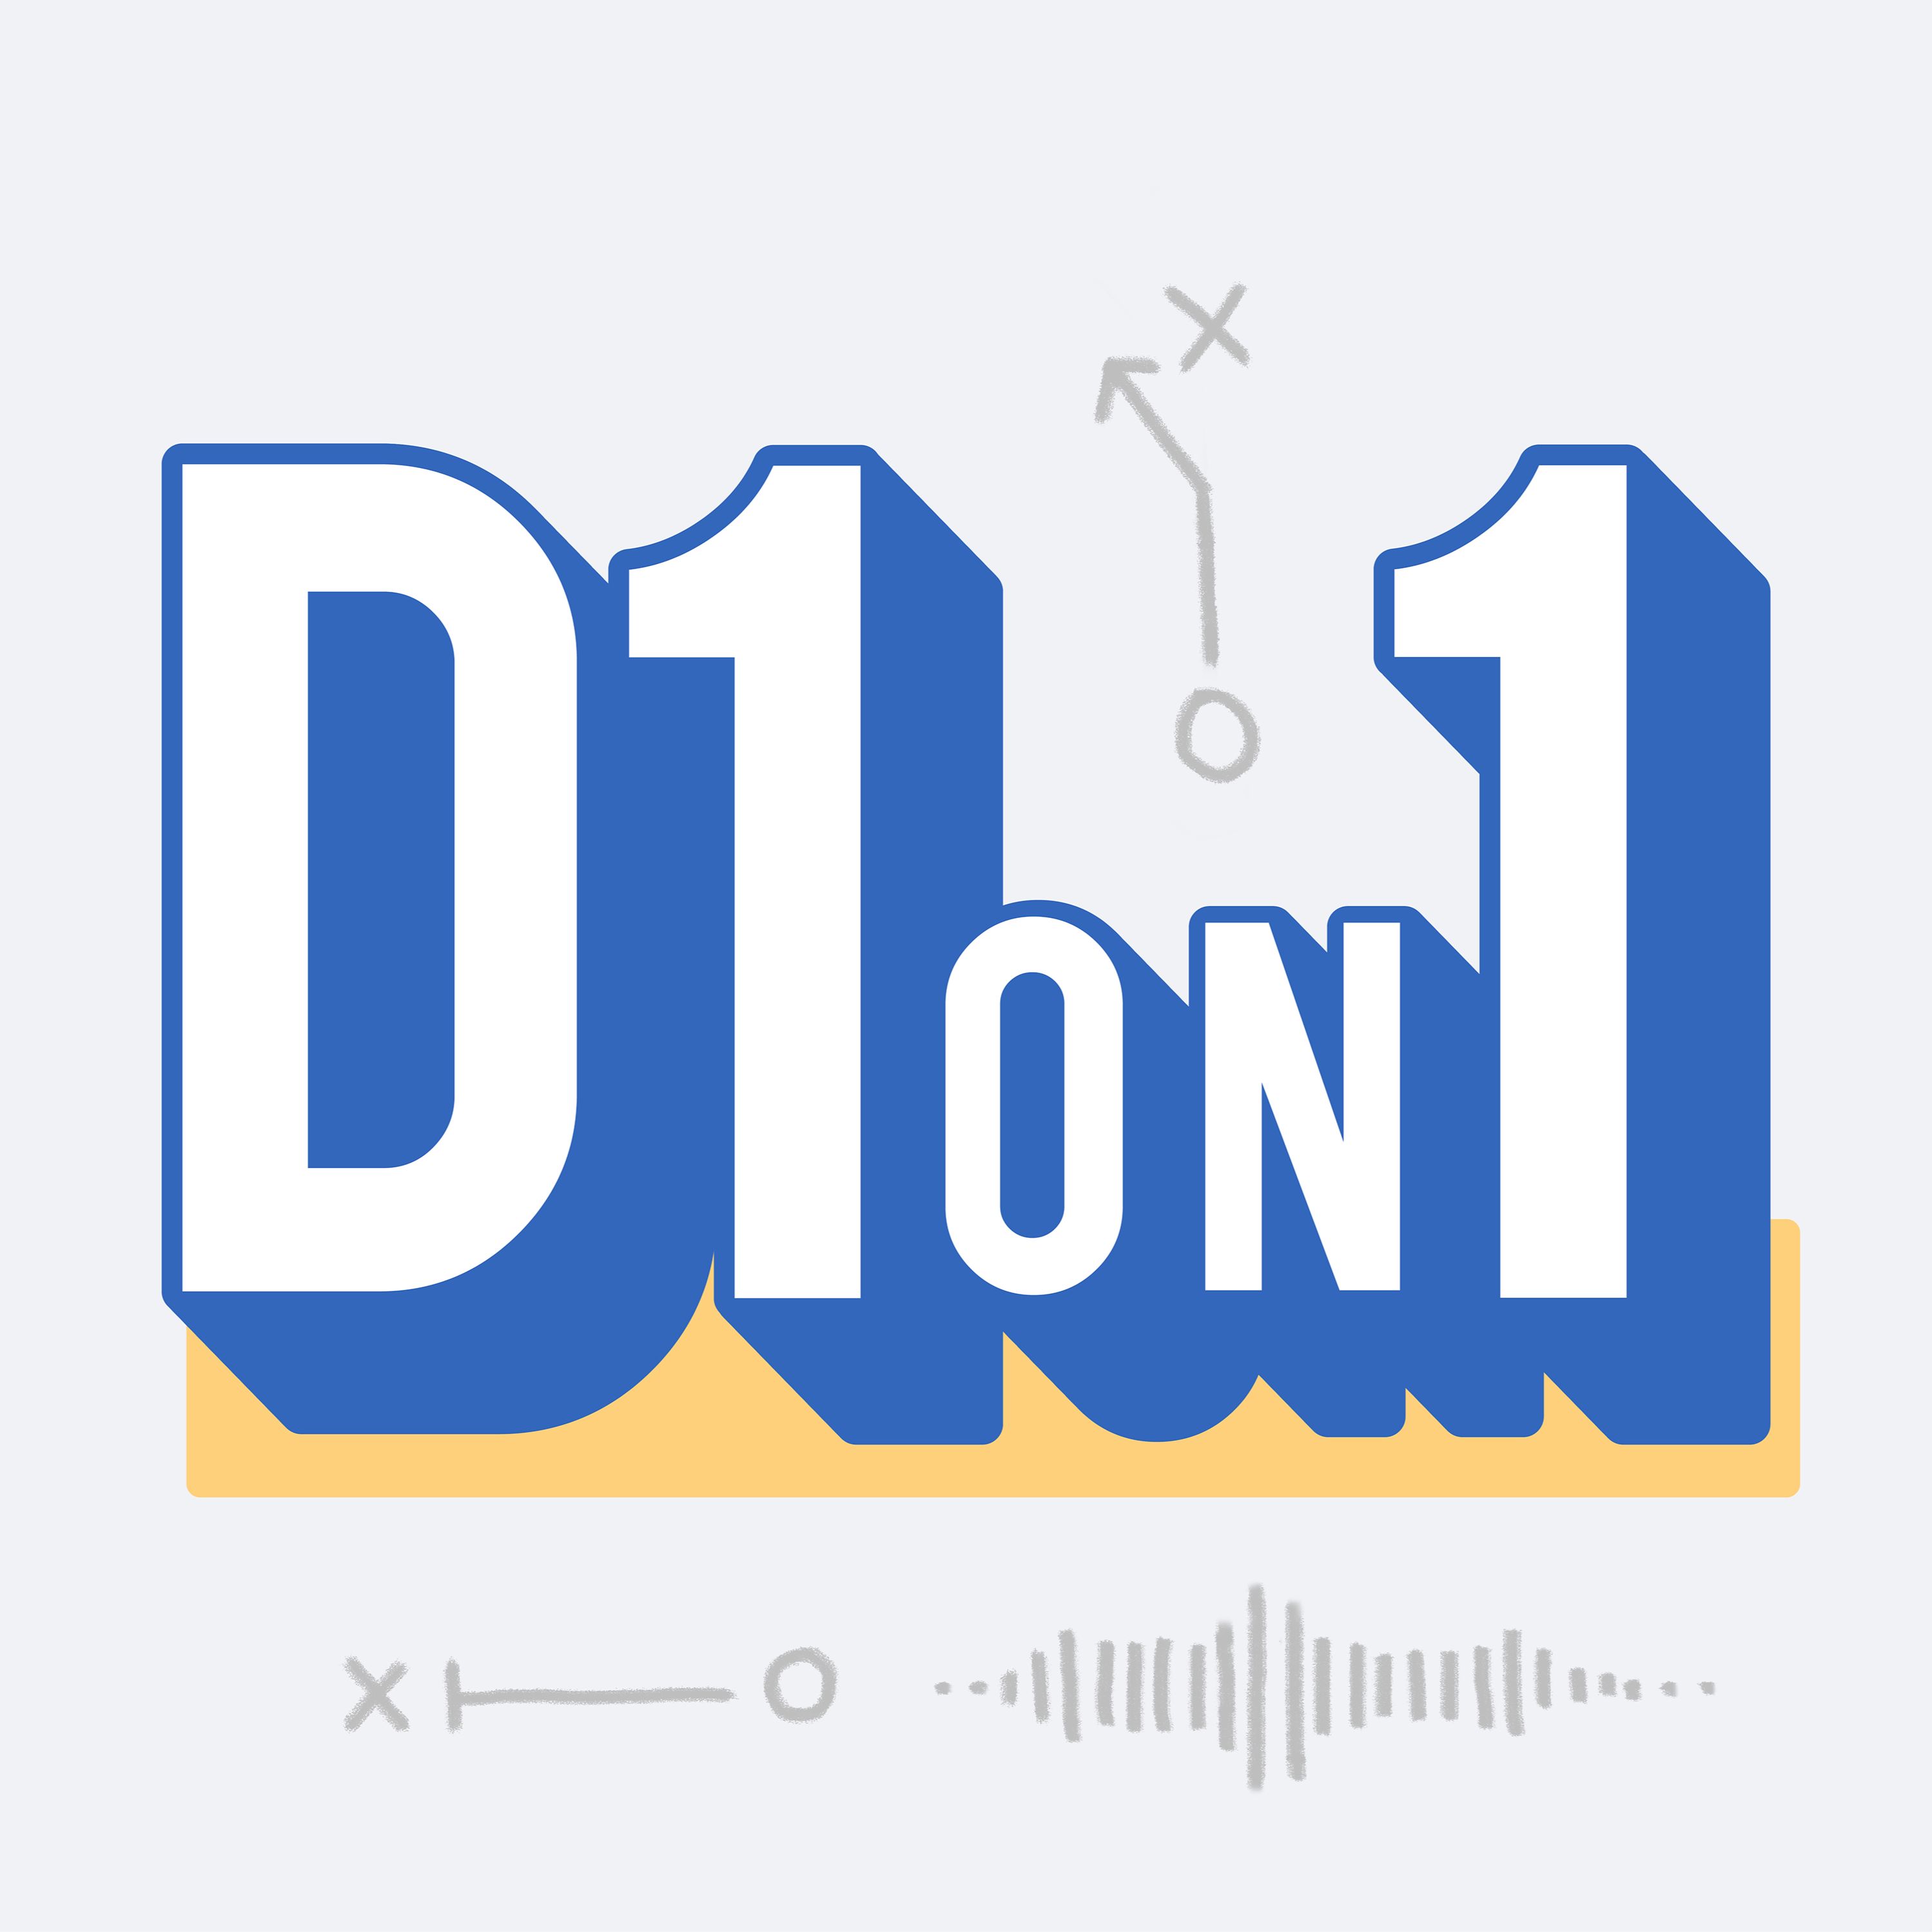 D1on1